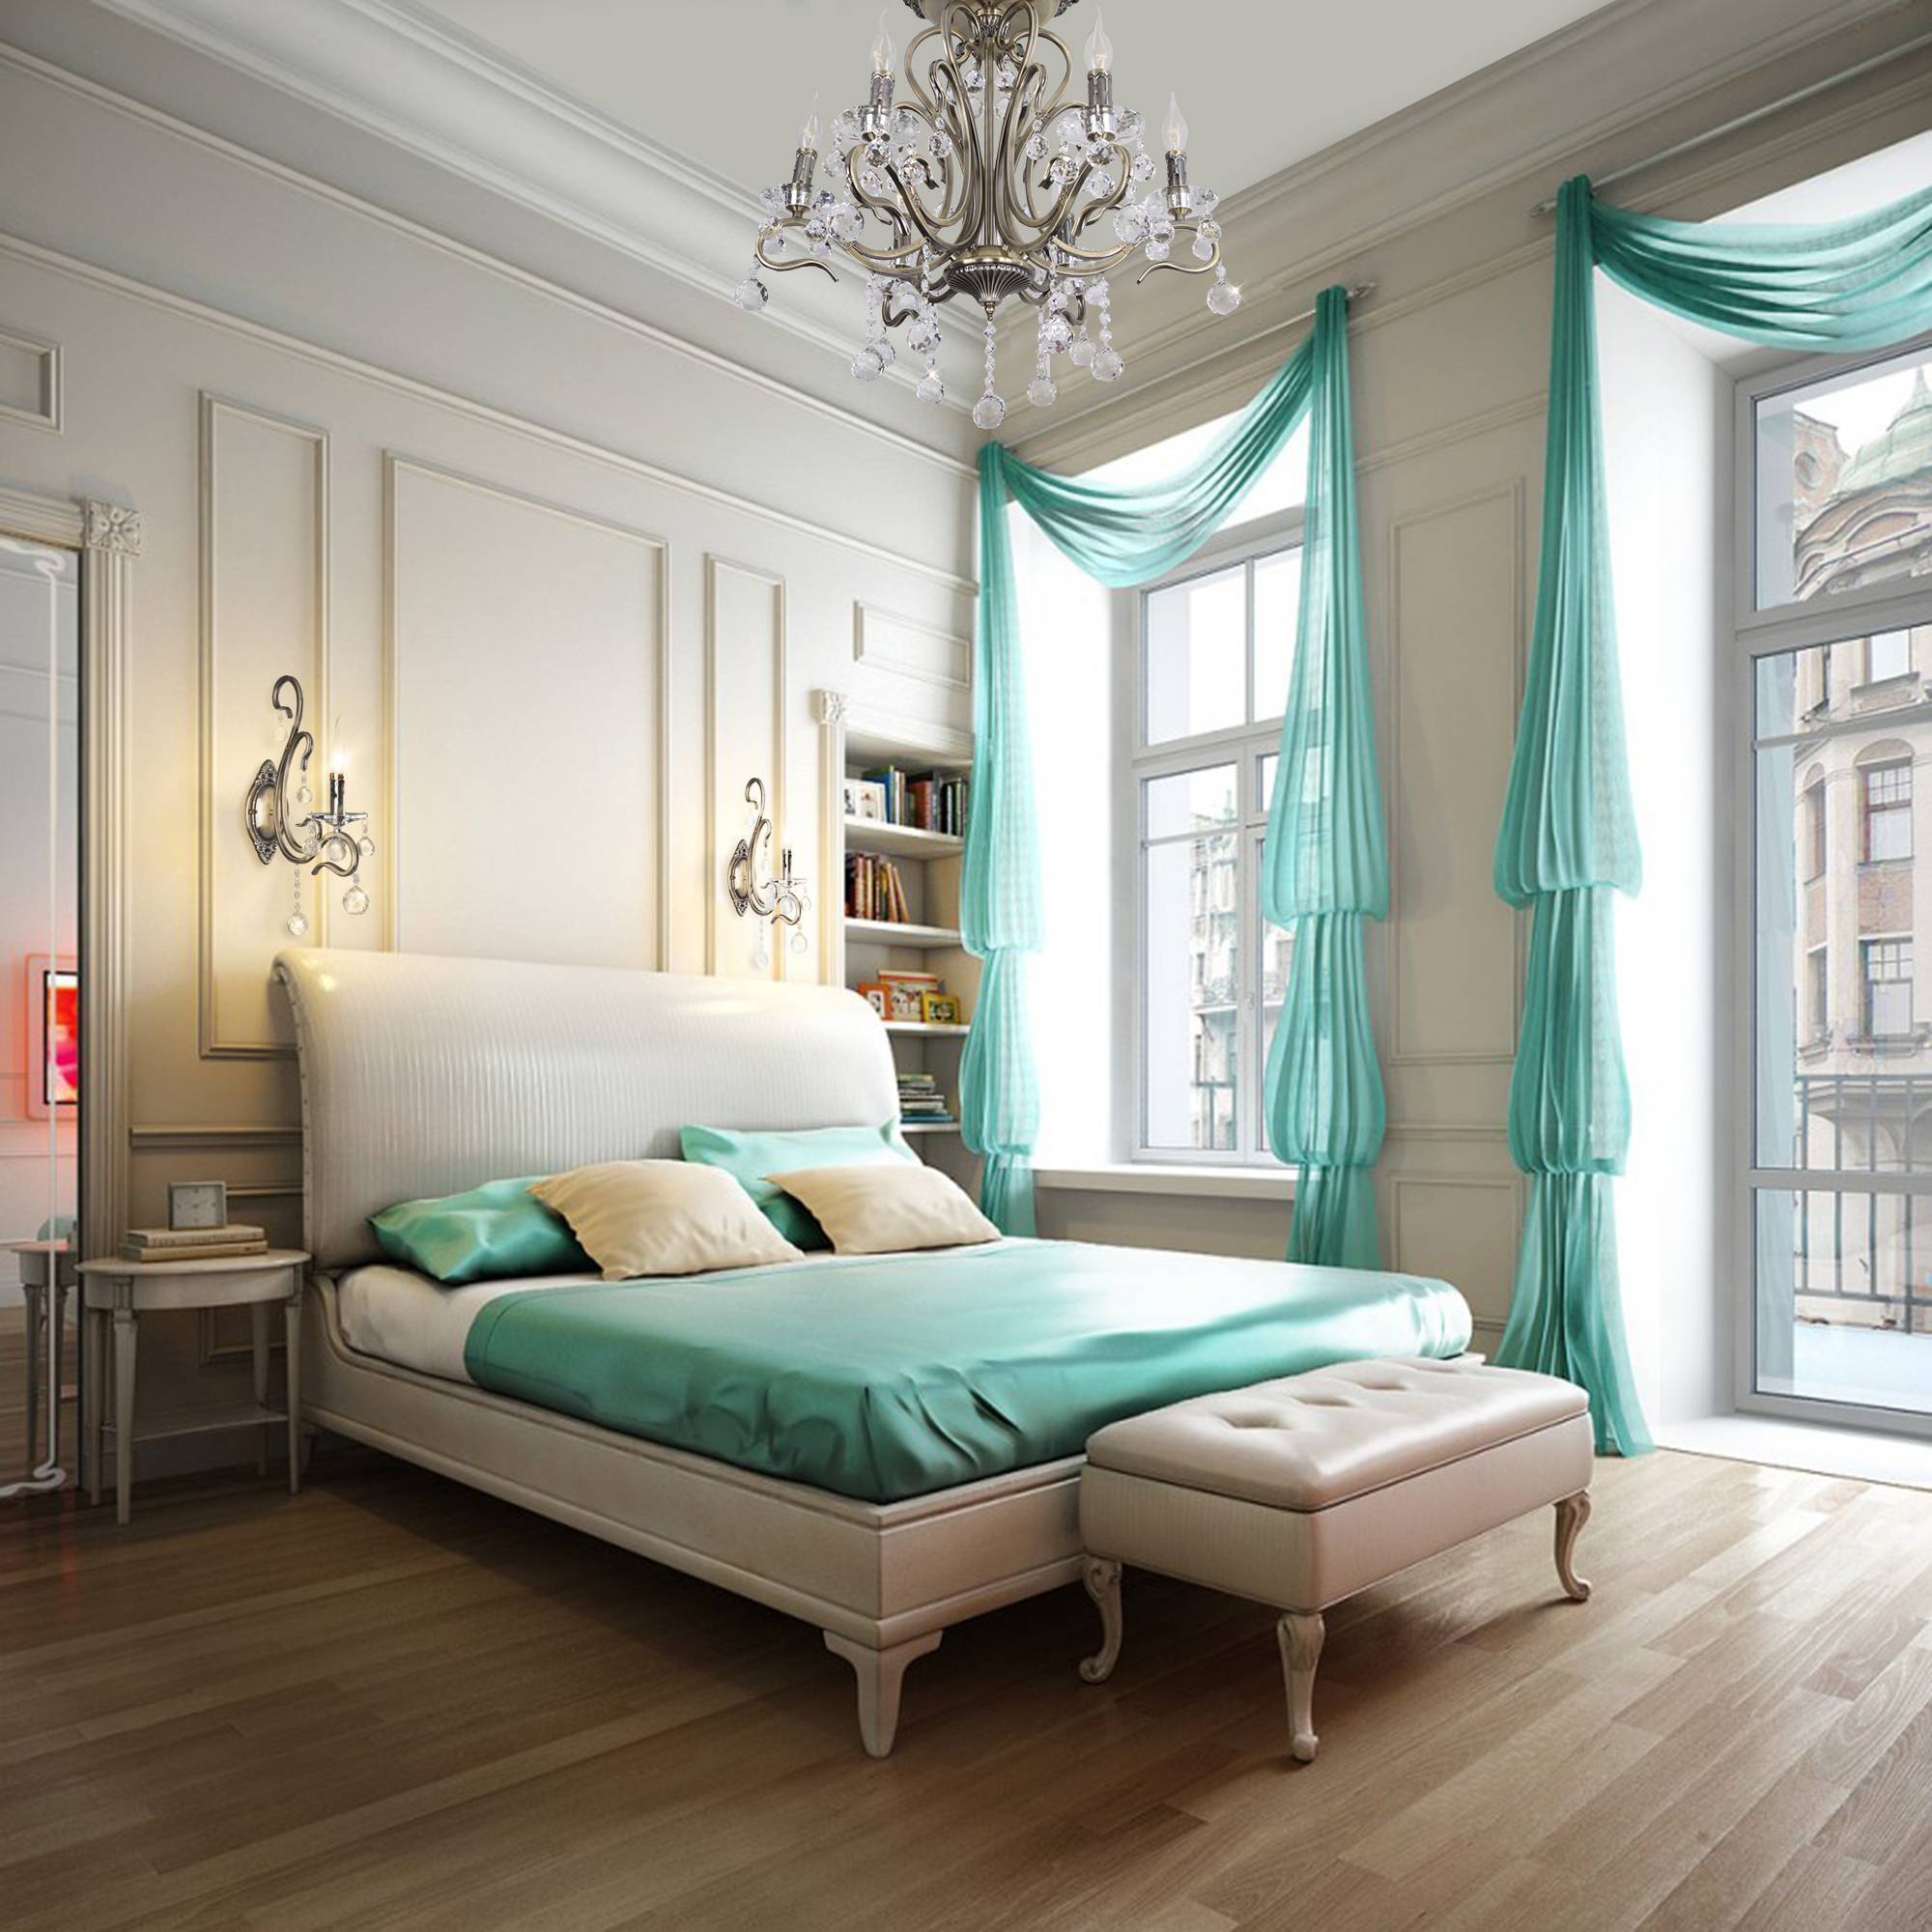 Современные шторы в спальню 2020 (71 фото): модели занавесок, идеи дизайна, красивые новинки, плотные модели в комнату венге и белого цвета